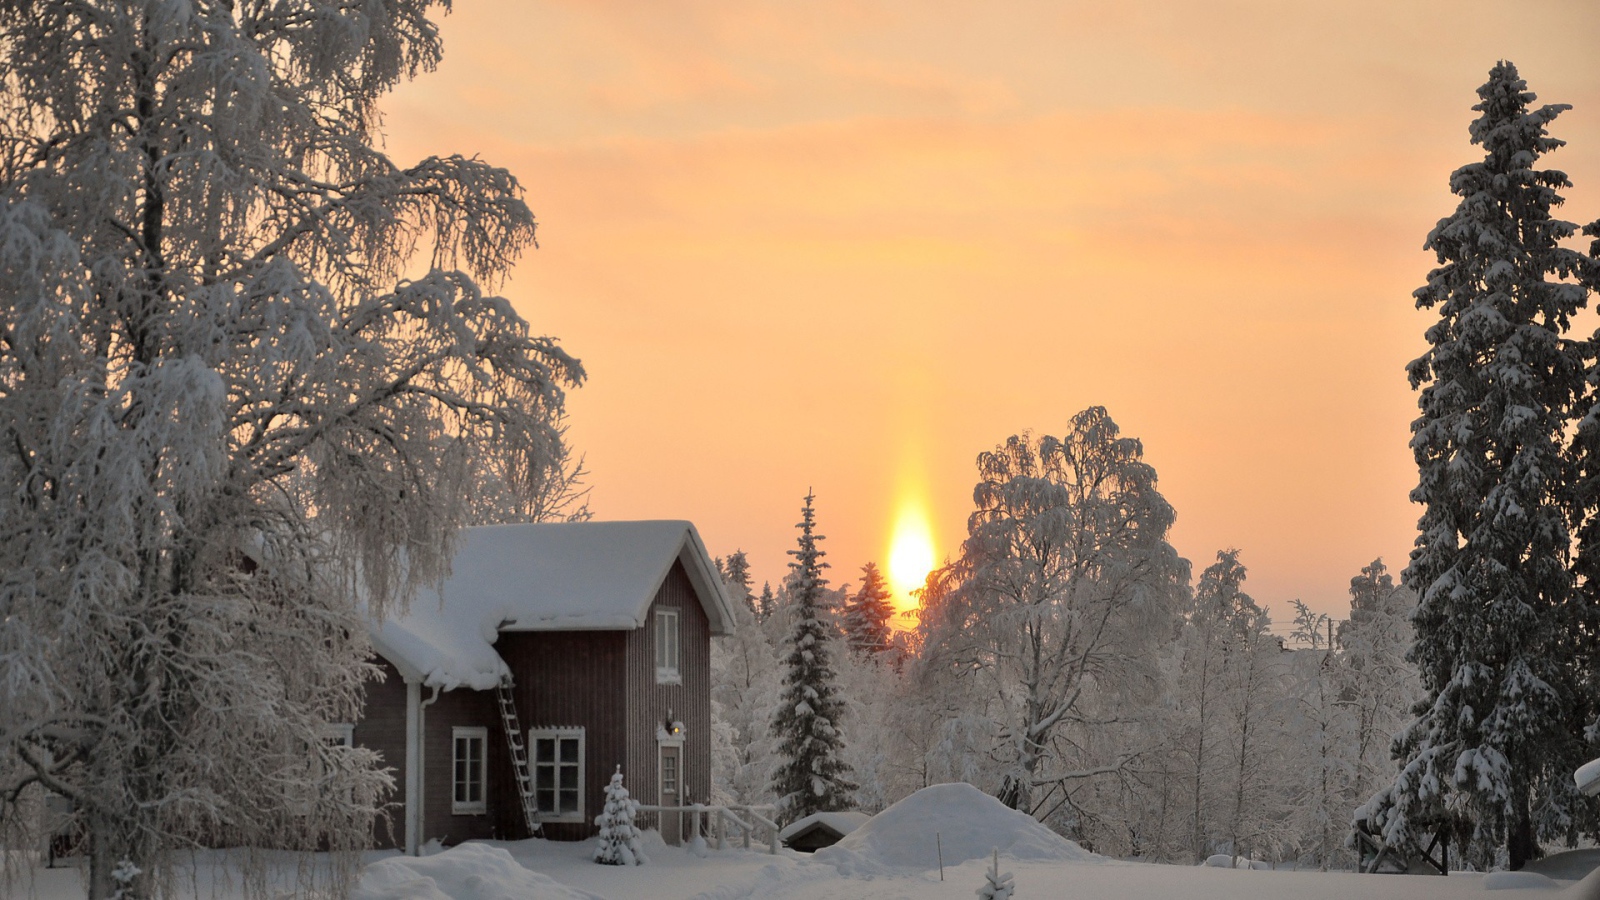 Деревянный дом в зимнем лесу на закате